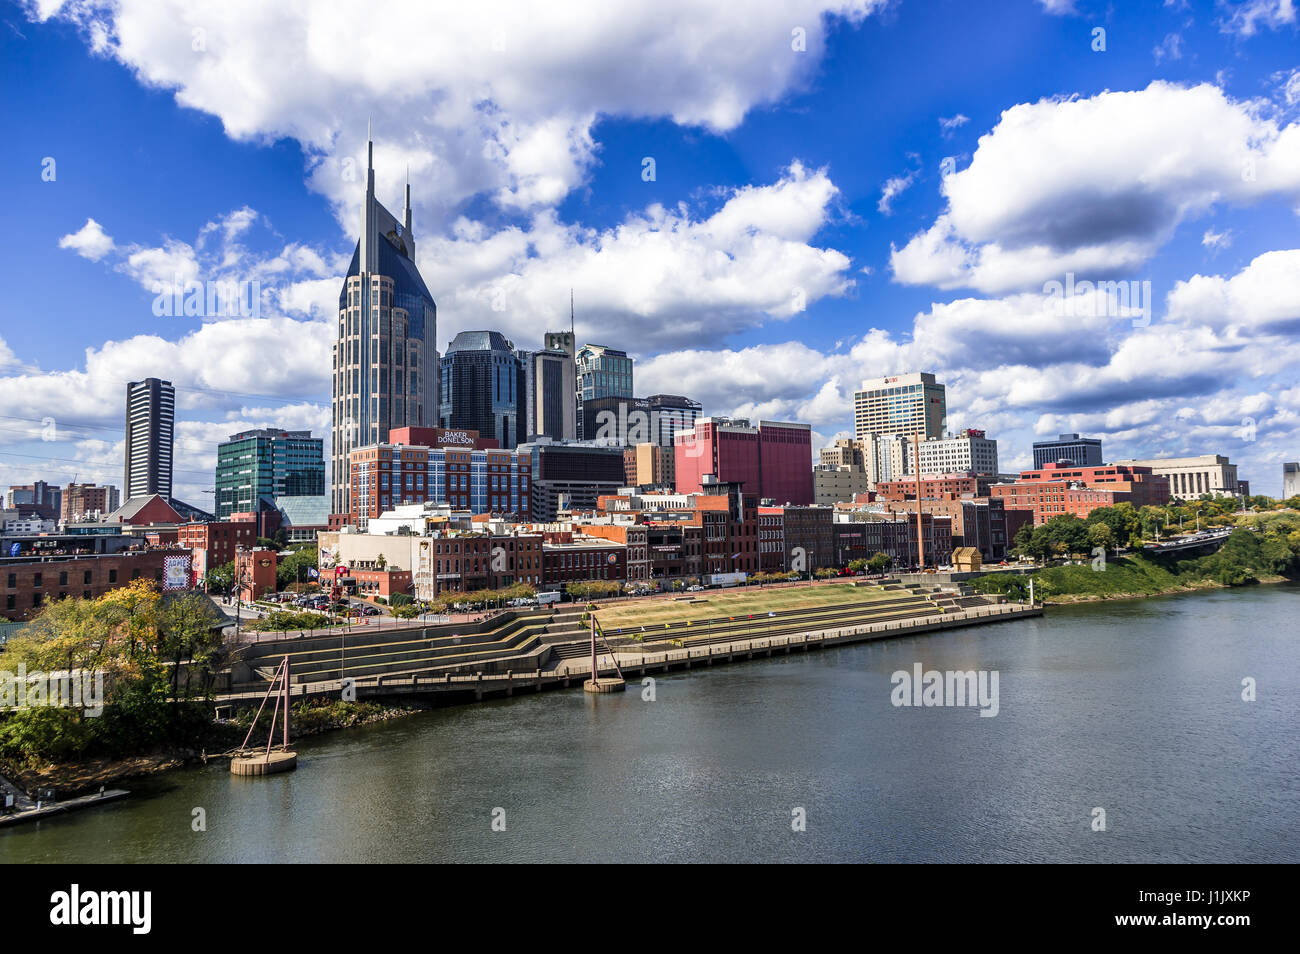 Musik Stadt Radweg, Nashville, Tennessee • Vereinigte Staaten die Nashville Music City Radweg ist eine 26 km lange Route f Stockfoto